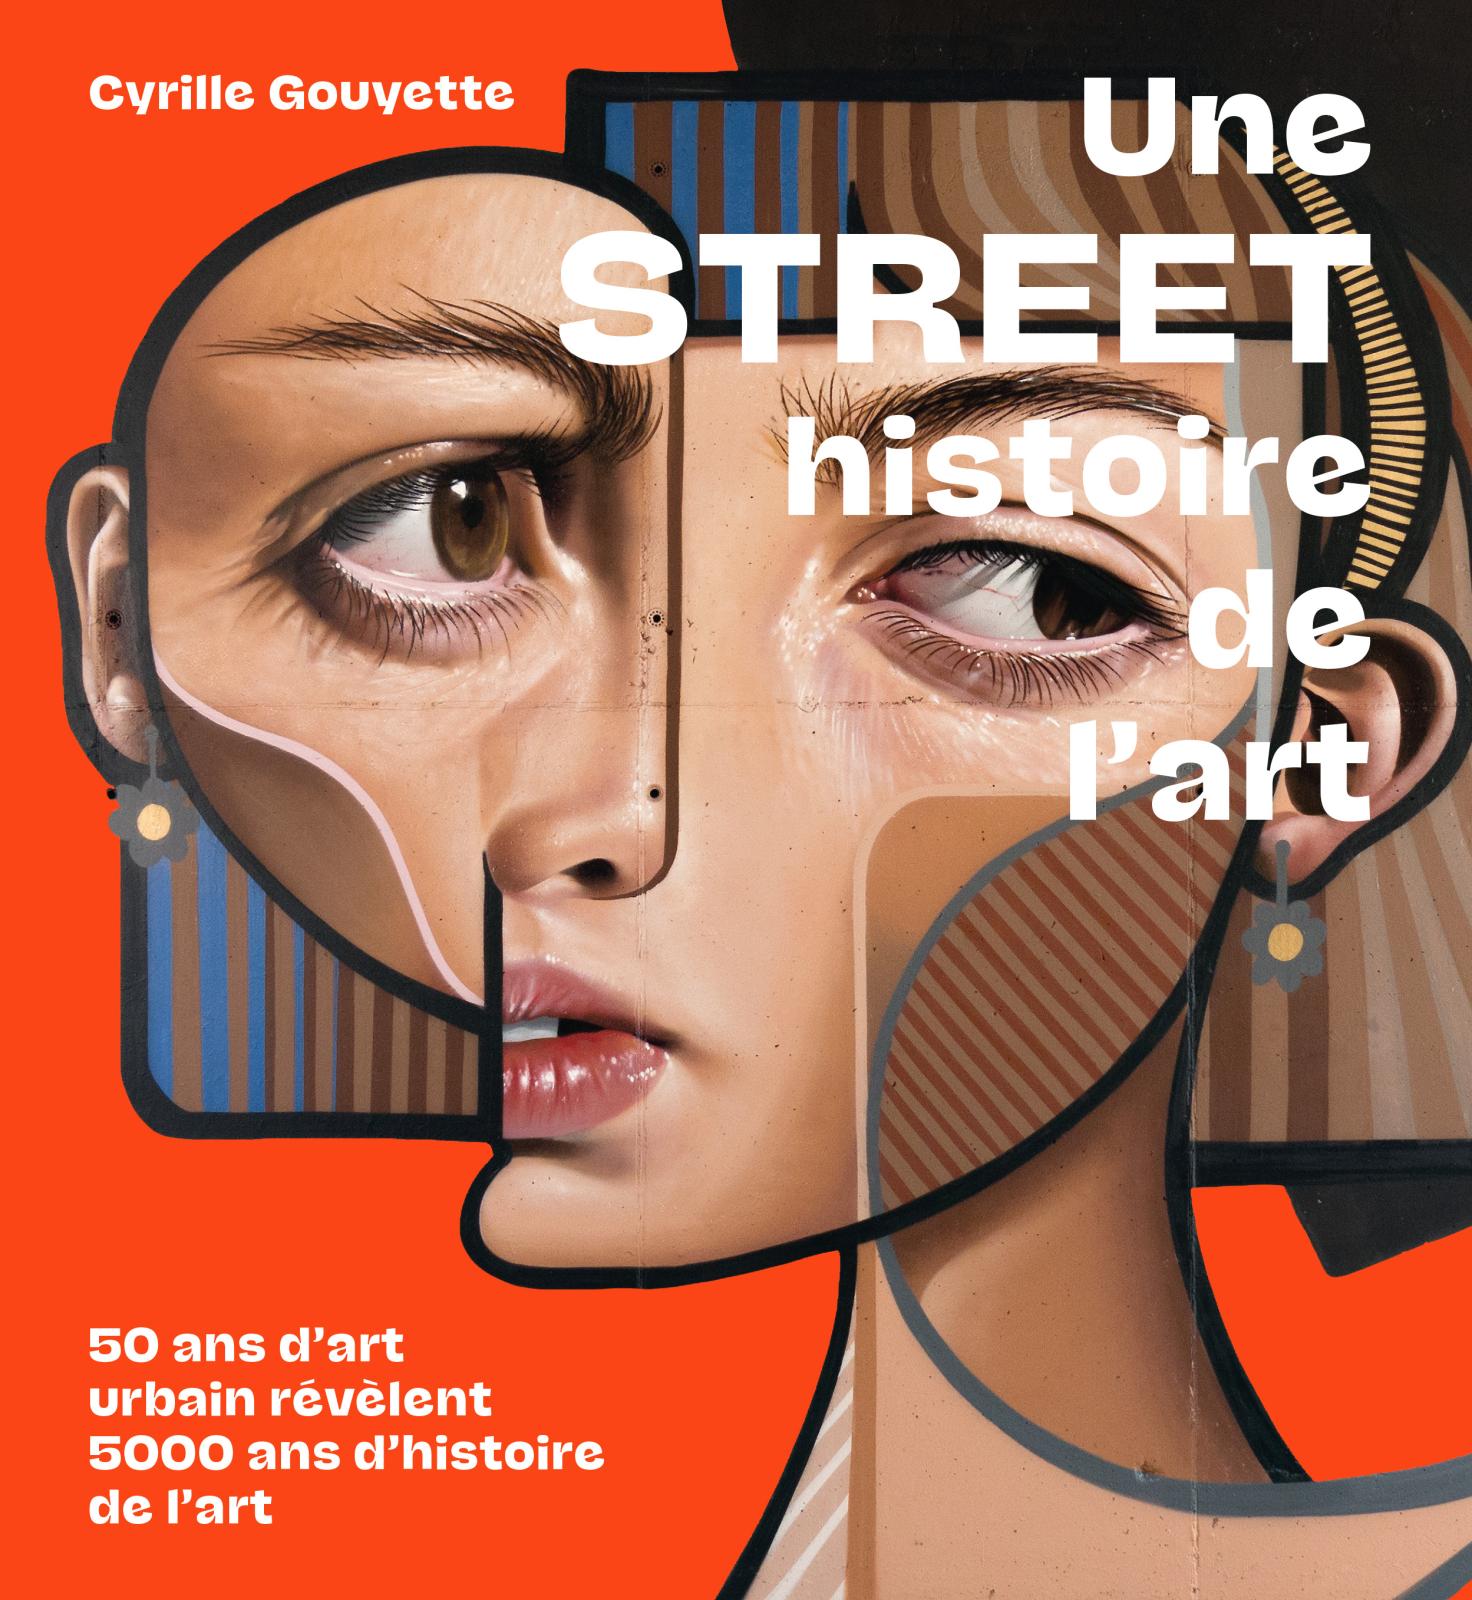 Cyrille Gouyette, Une street histoire de l’art. 50 ans d’art urbain révèlent 5000 ans d’histoire de l’art, 224 pages, 25 €, éditions Alter